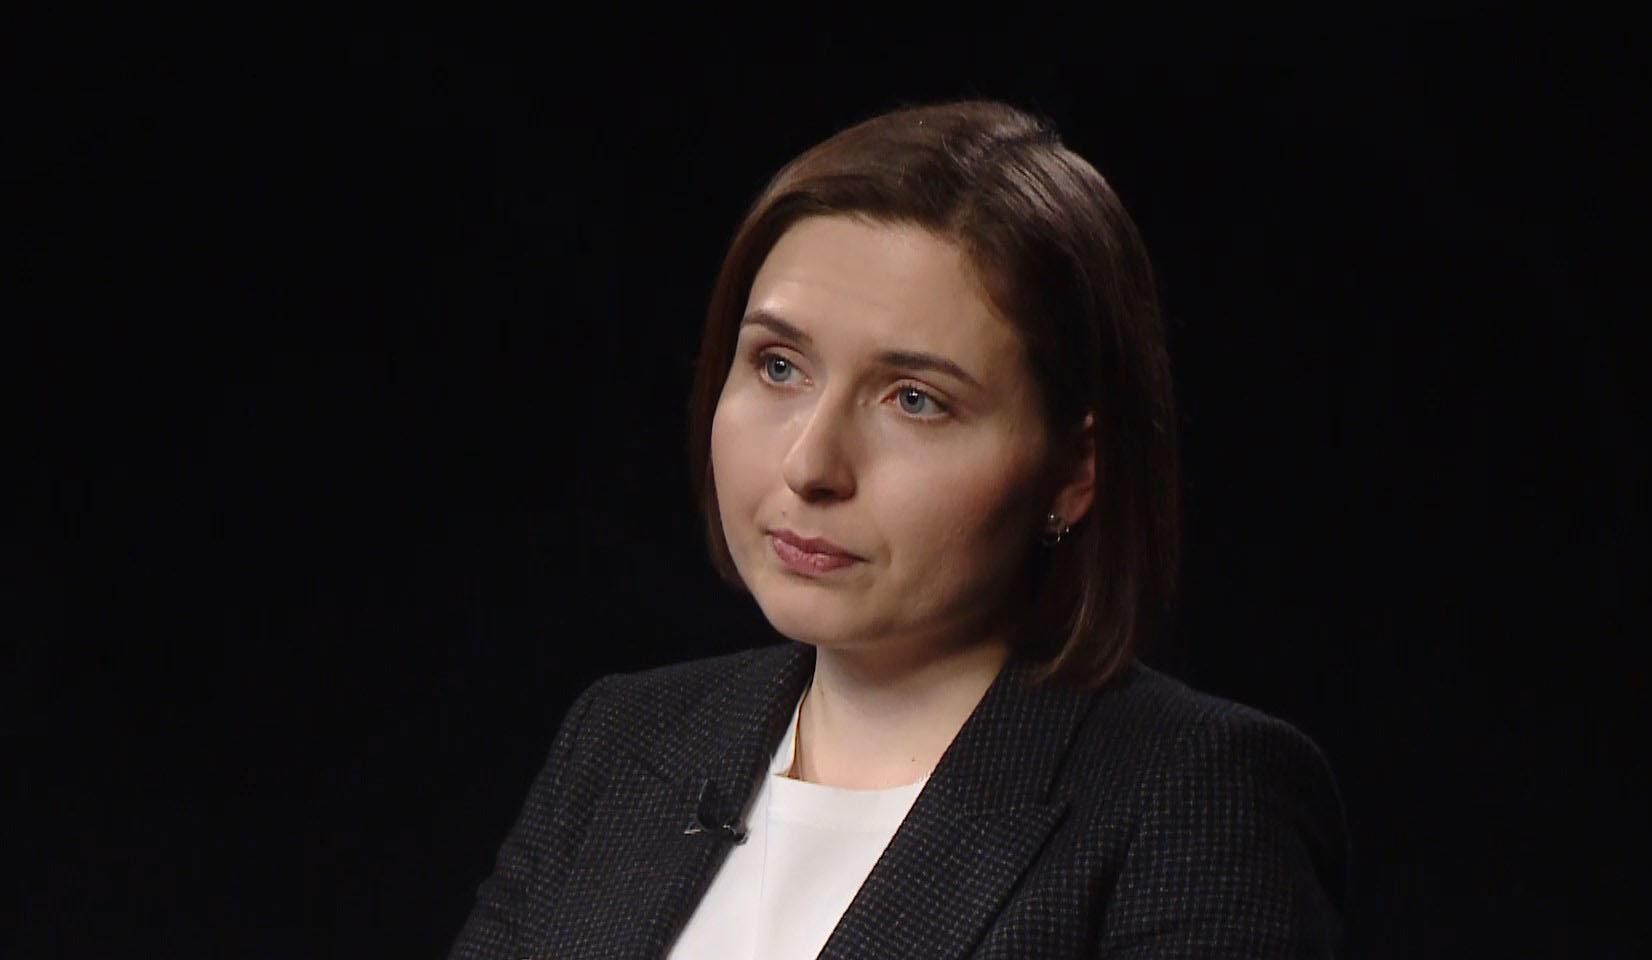 Почему Новосад не осталась в правительстве Шмыгаля: откровенное интервью с экс-министром